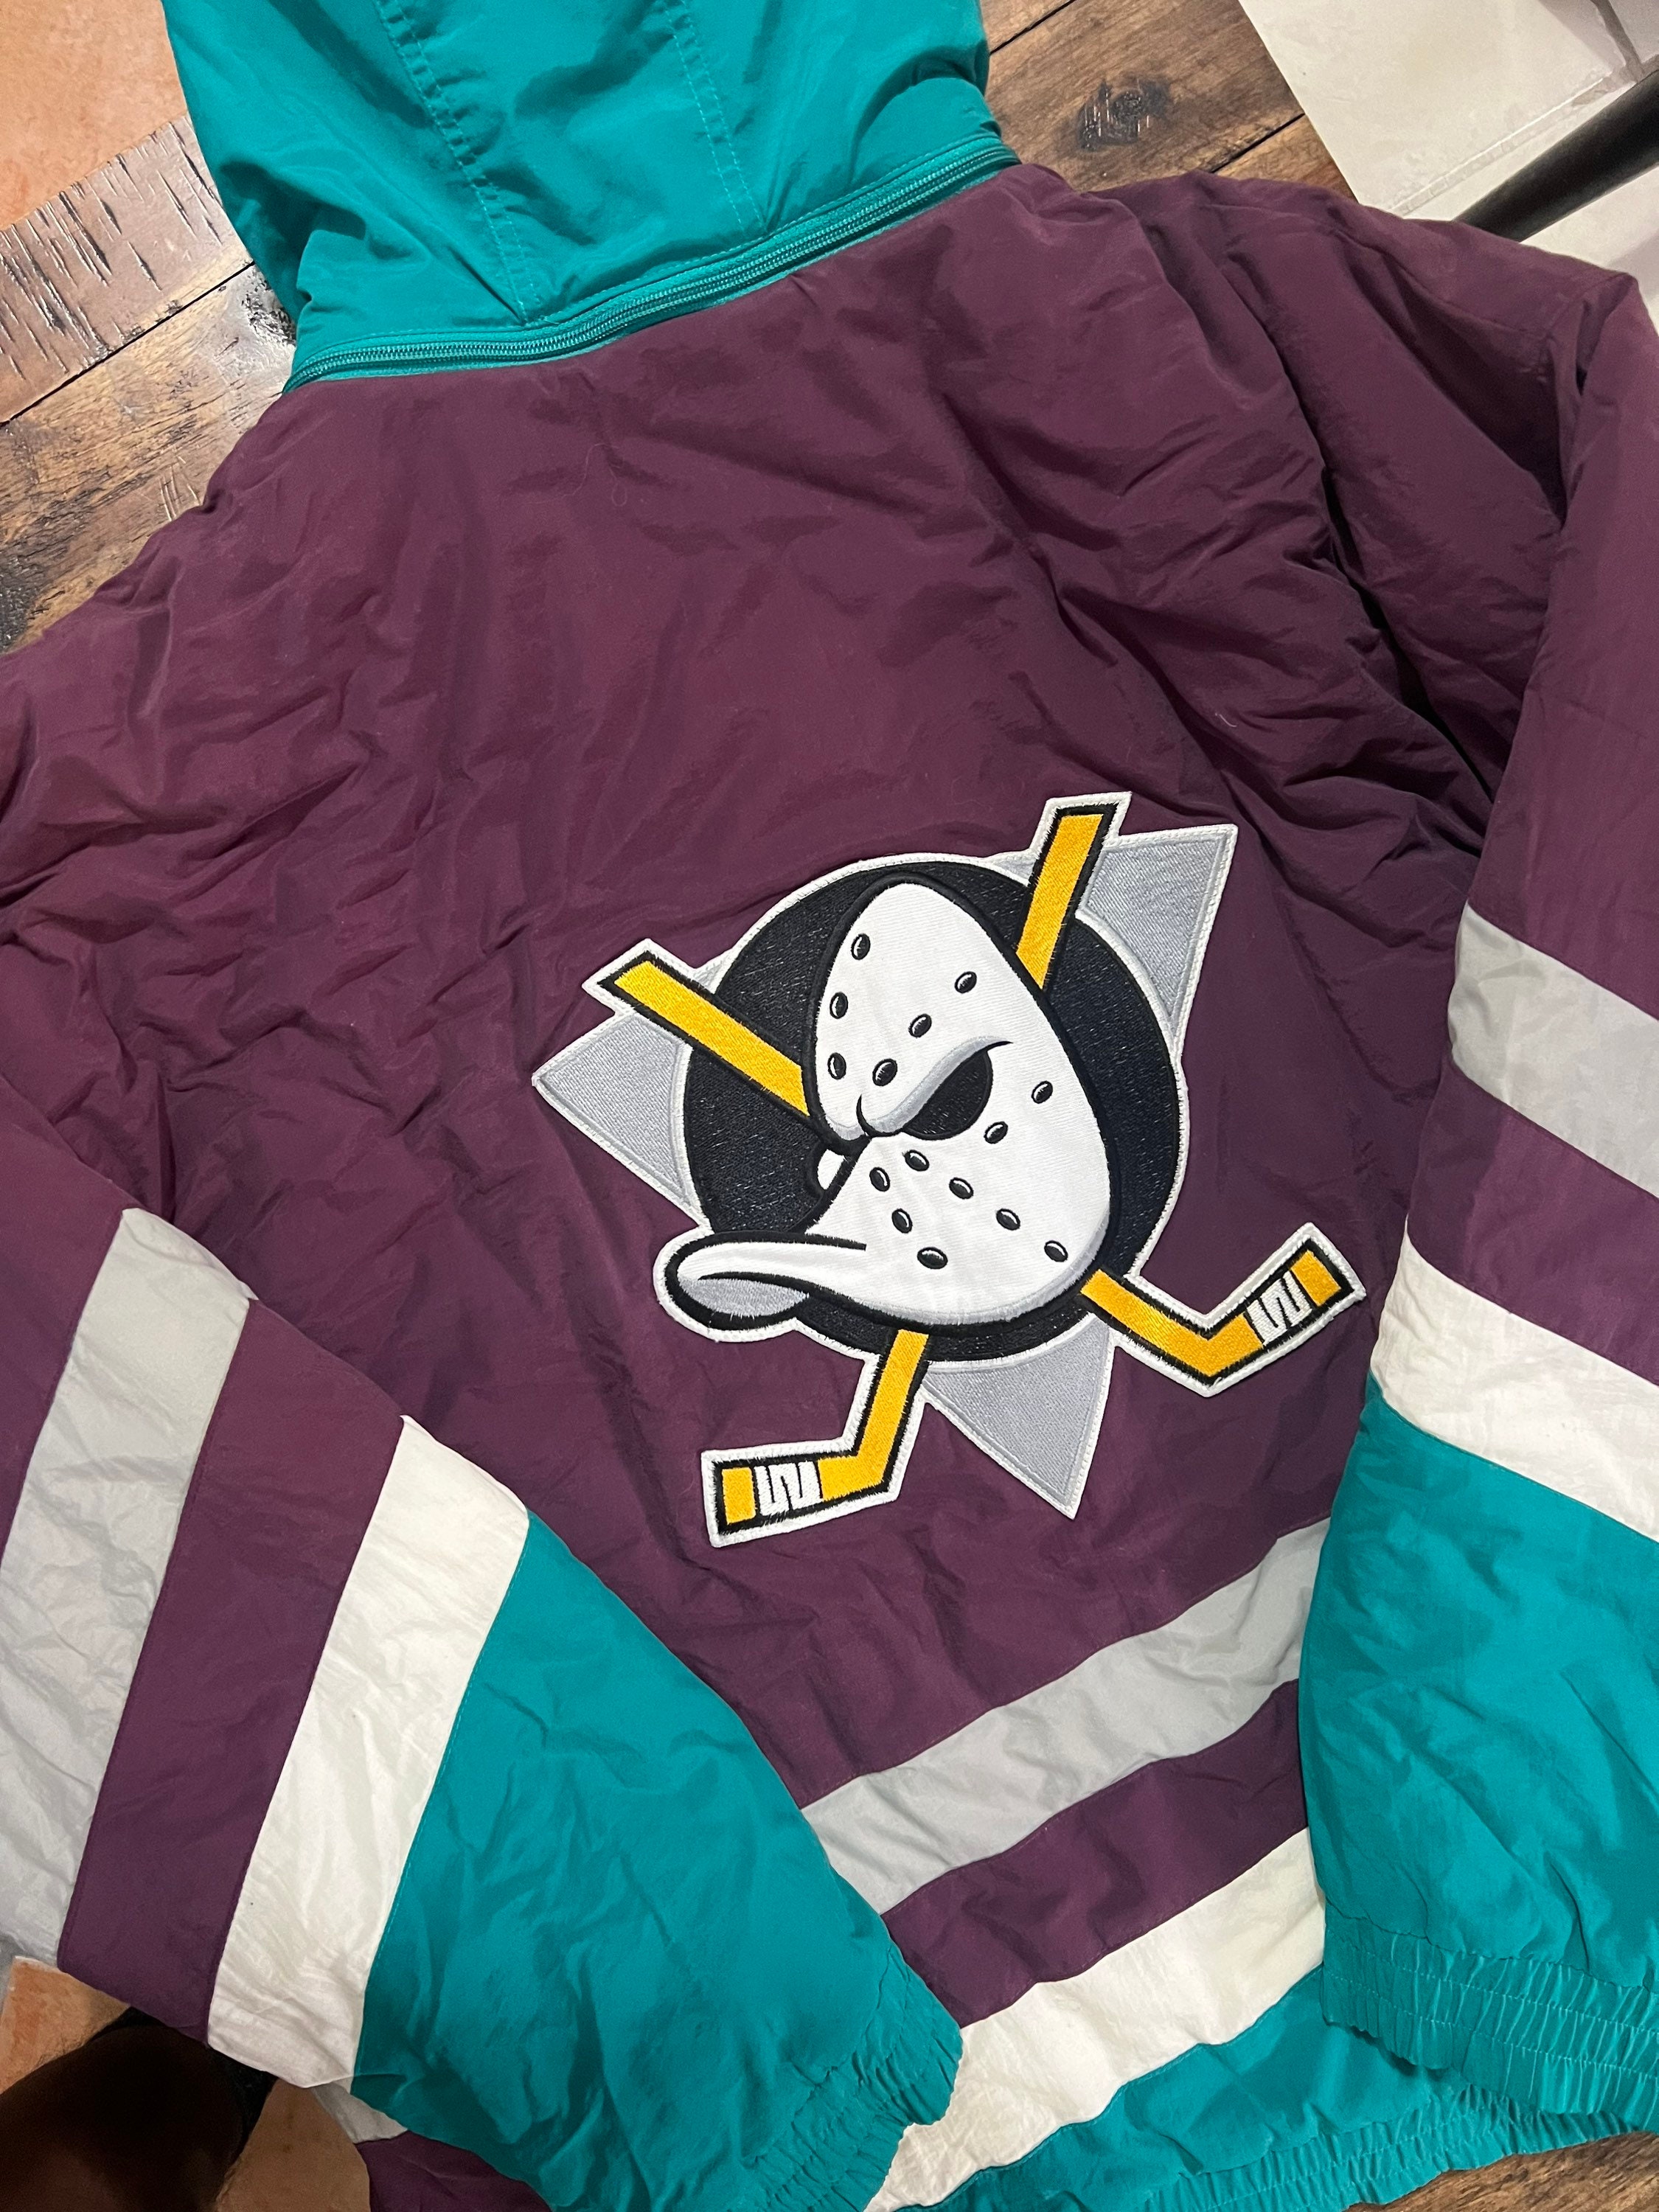 0316 Starter Vintage Mighty Ducks Jersey – PAUL'S FANSHOP